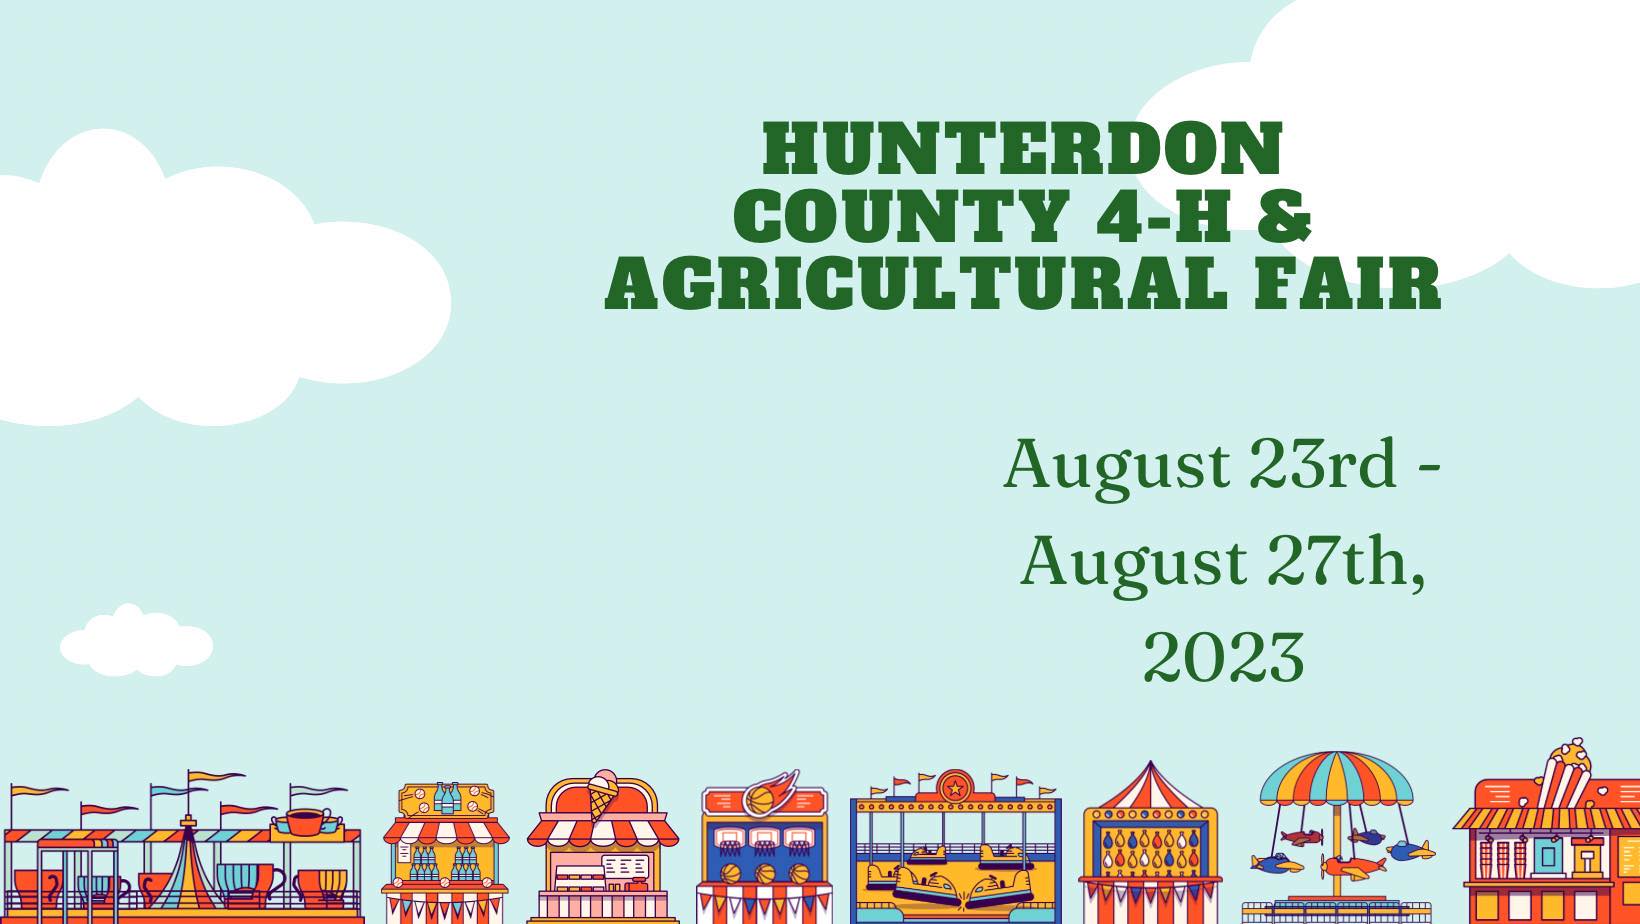 Hunterdon County 4-H & Agricutural Fair